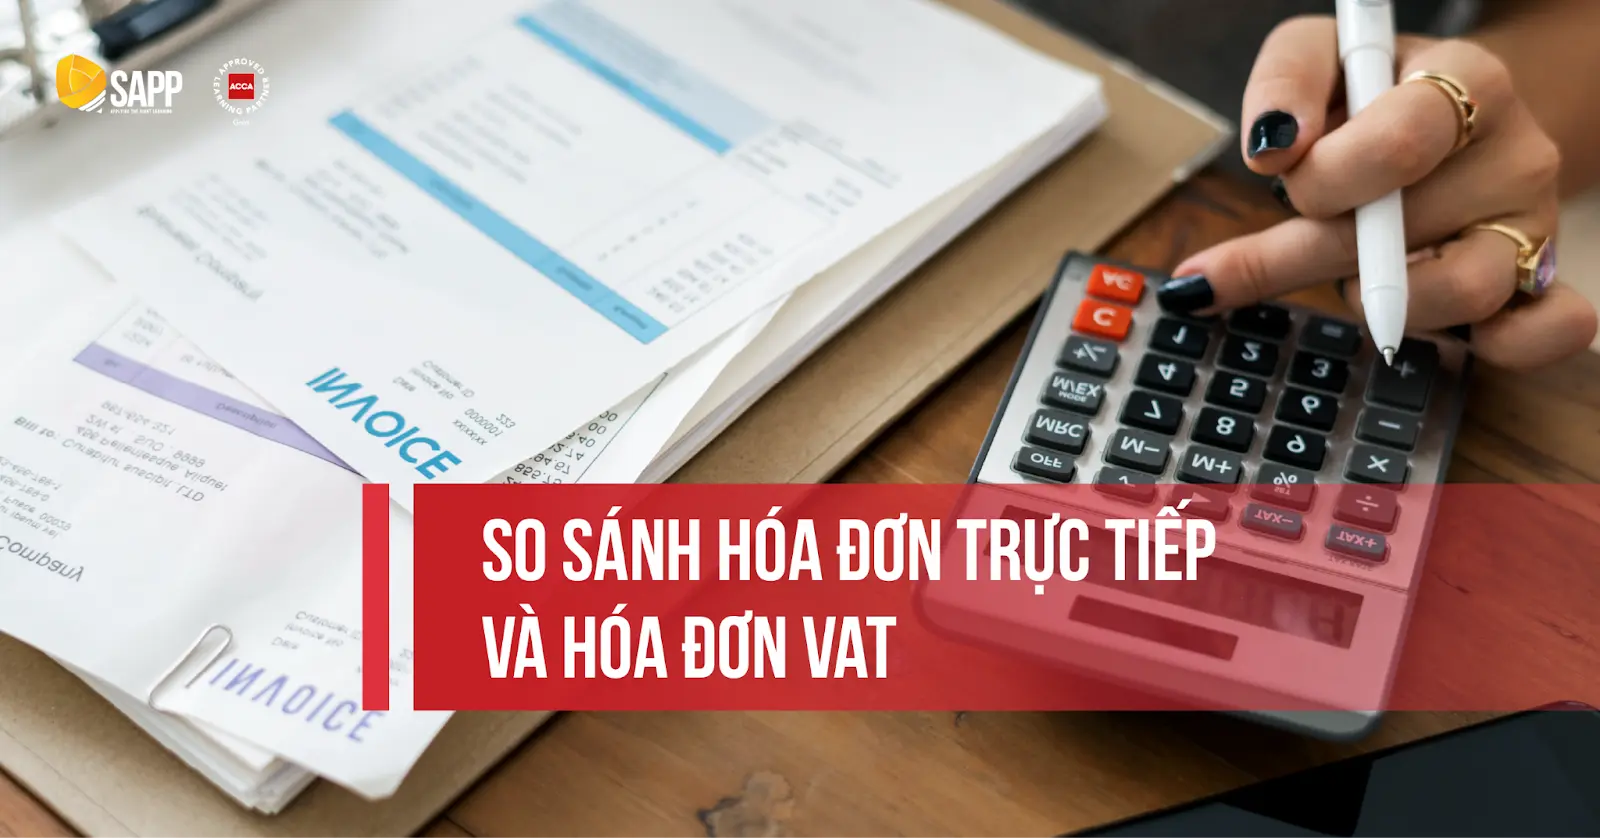 So sánh hóa đơn trực tiếp và hóa đơn VAT